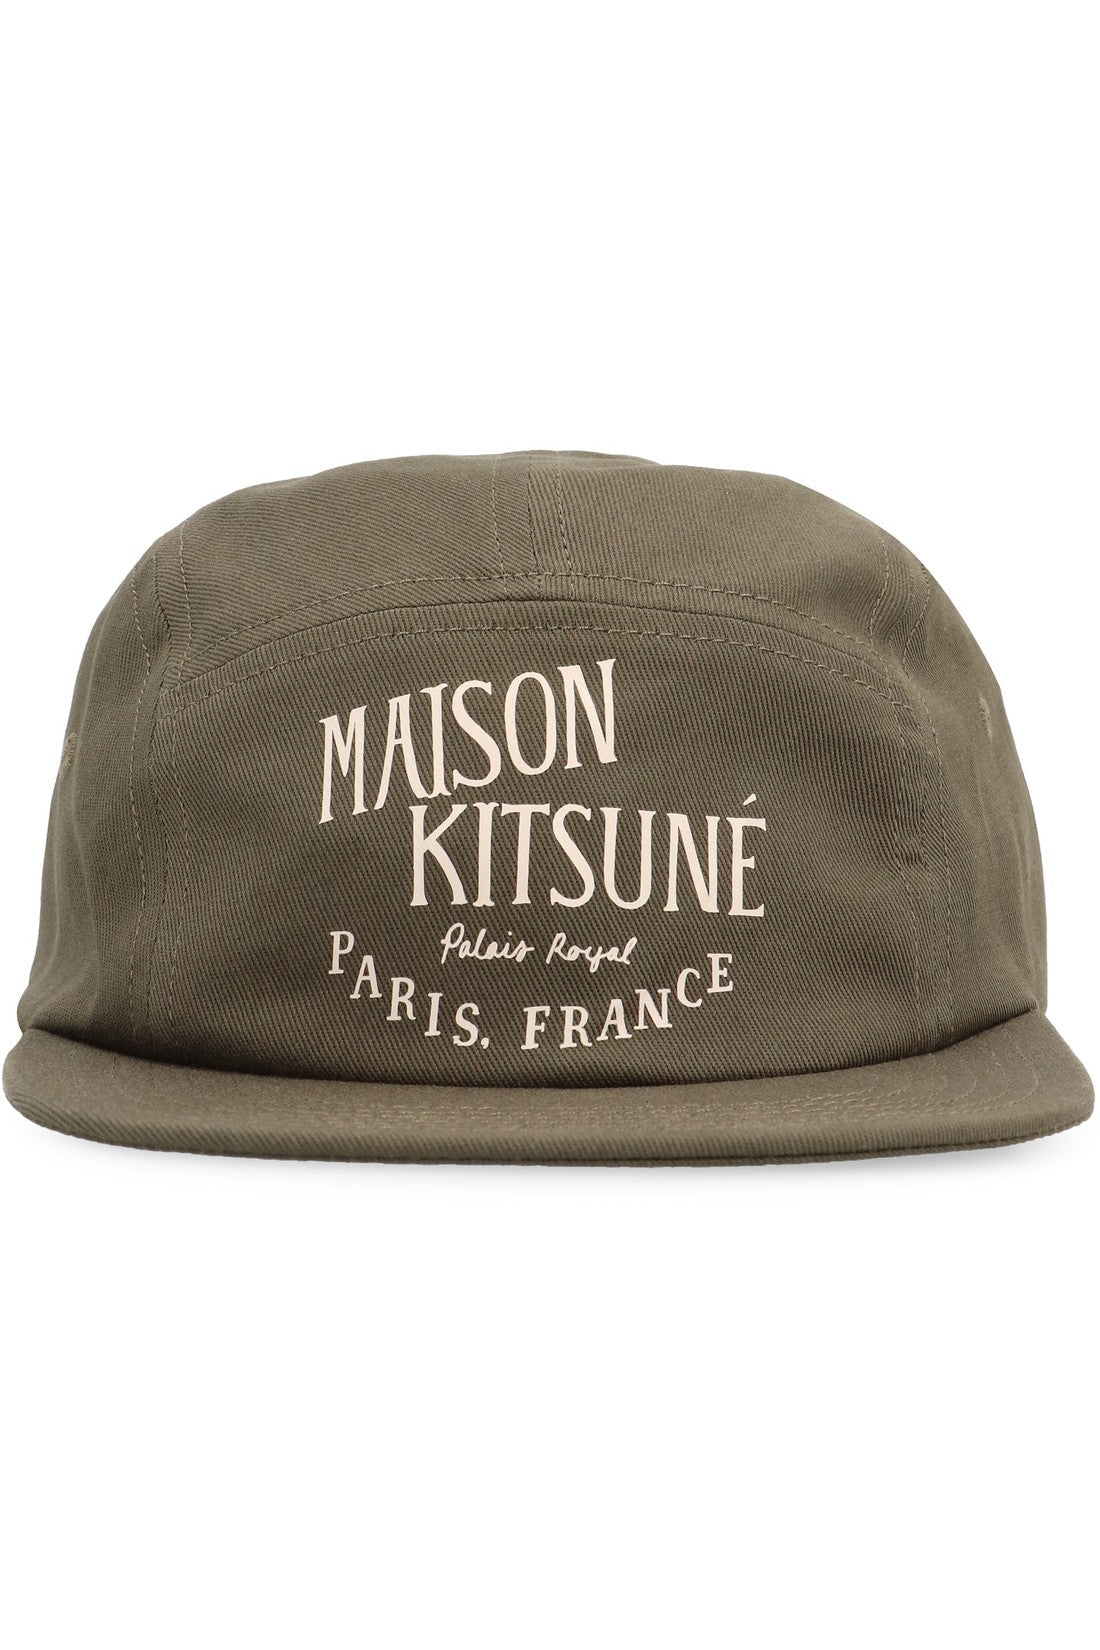 Maison Kitsuné-OUTLET-SALE-Logo baseball cap-ARCHIVIST